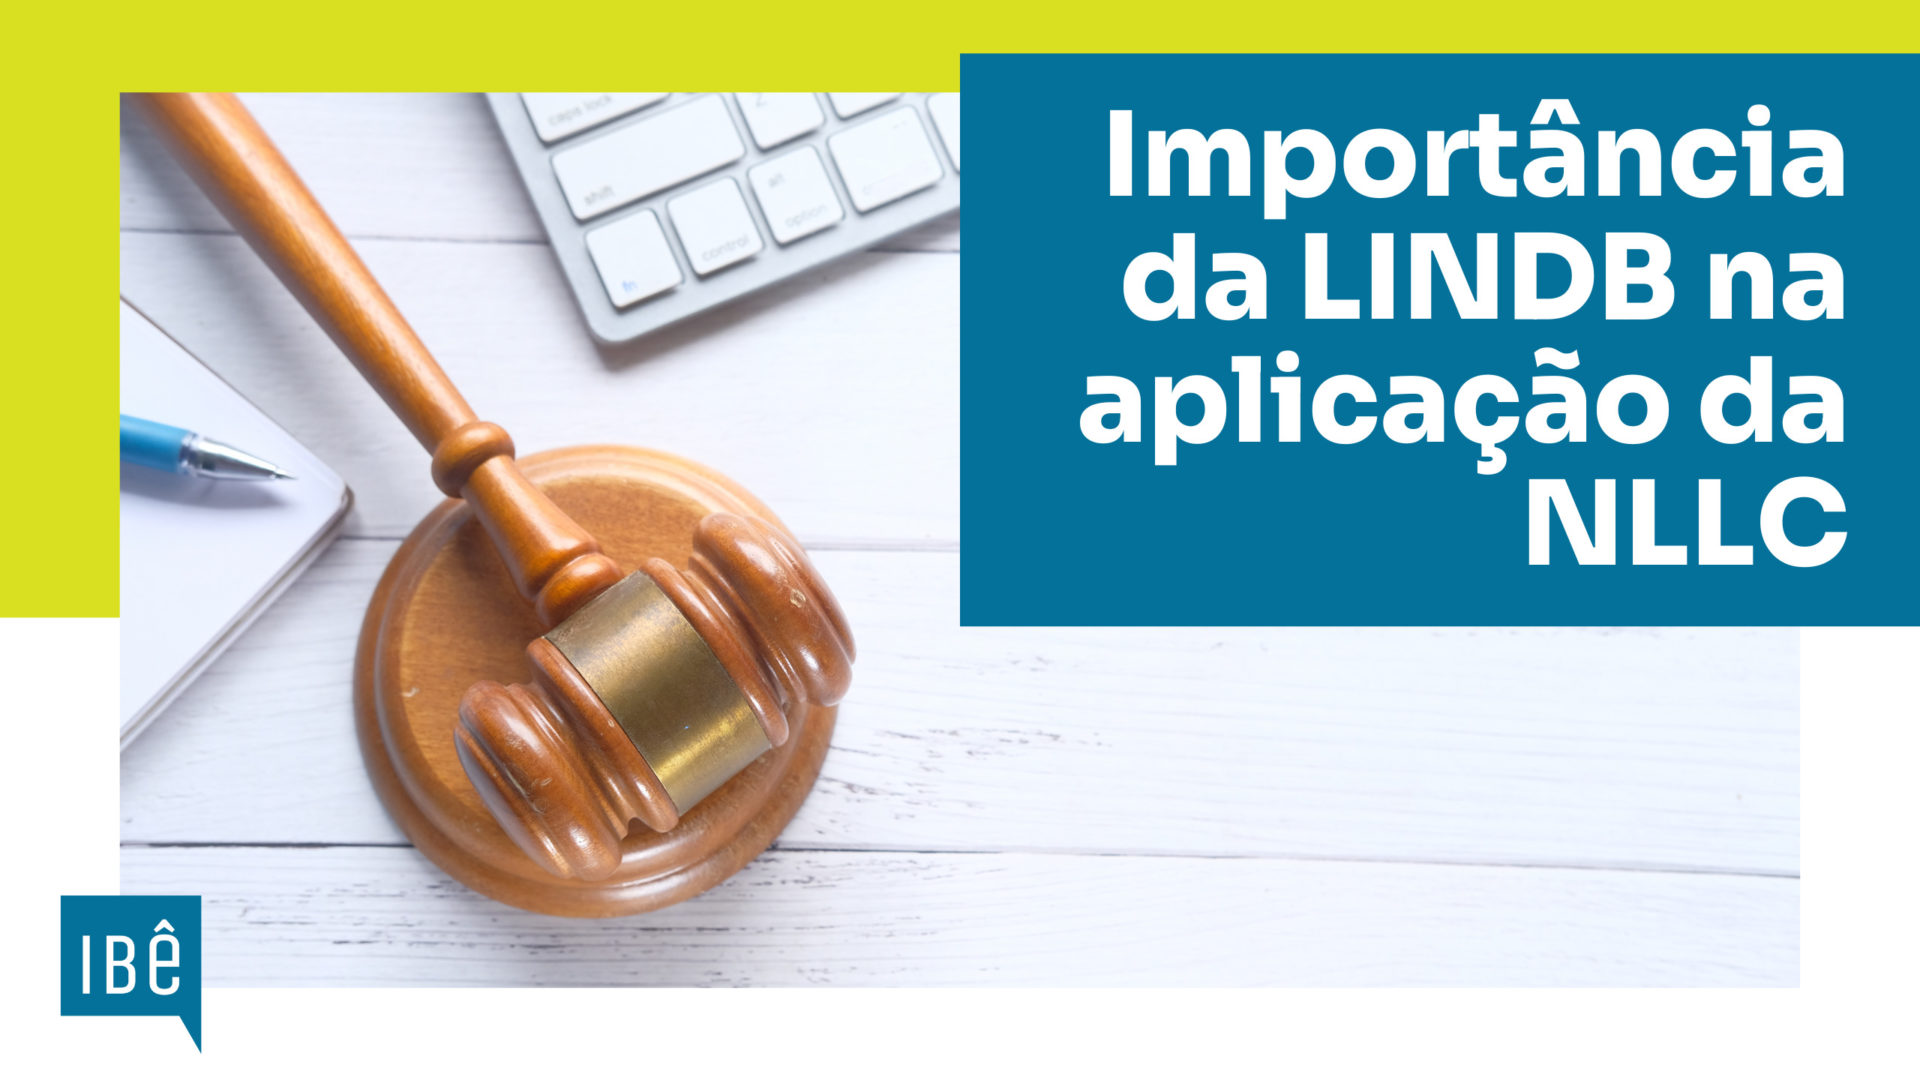 A importância da aplicação das disposições da LINDB no contexto de uma Nova Lei de Licitações e Contratos